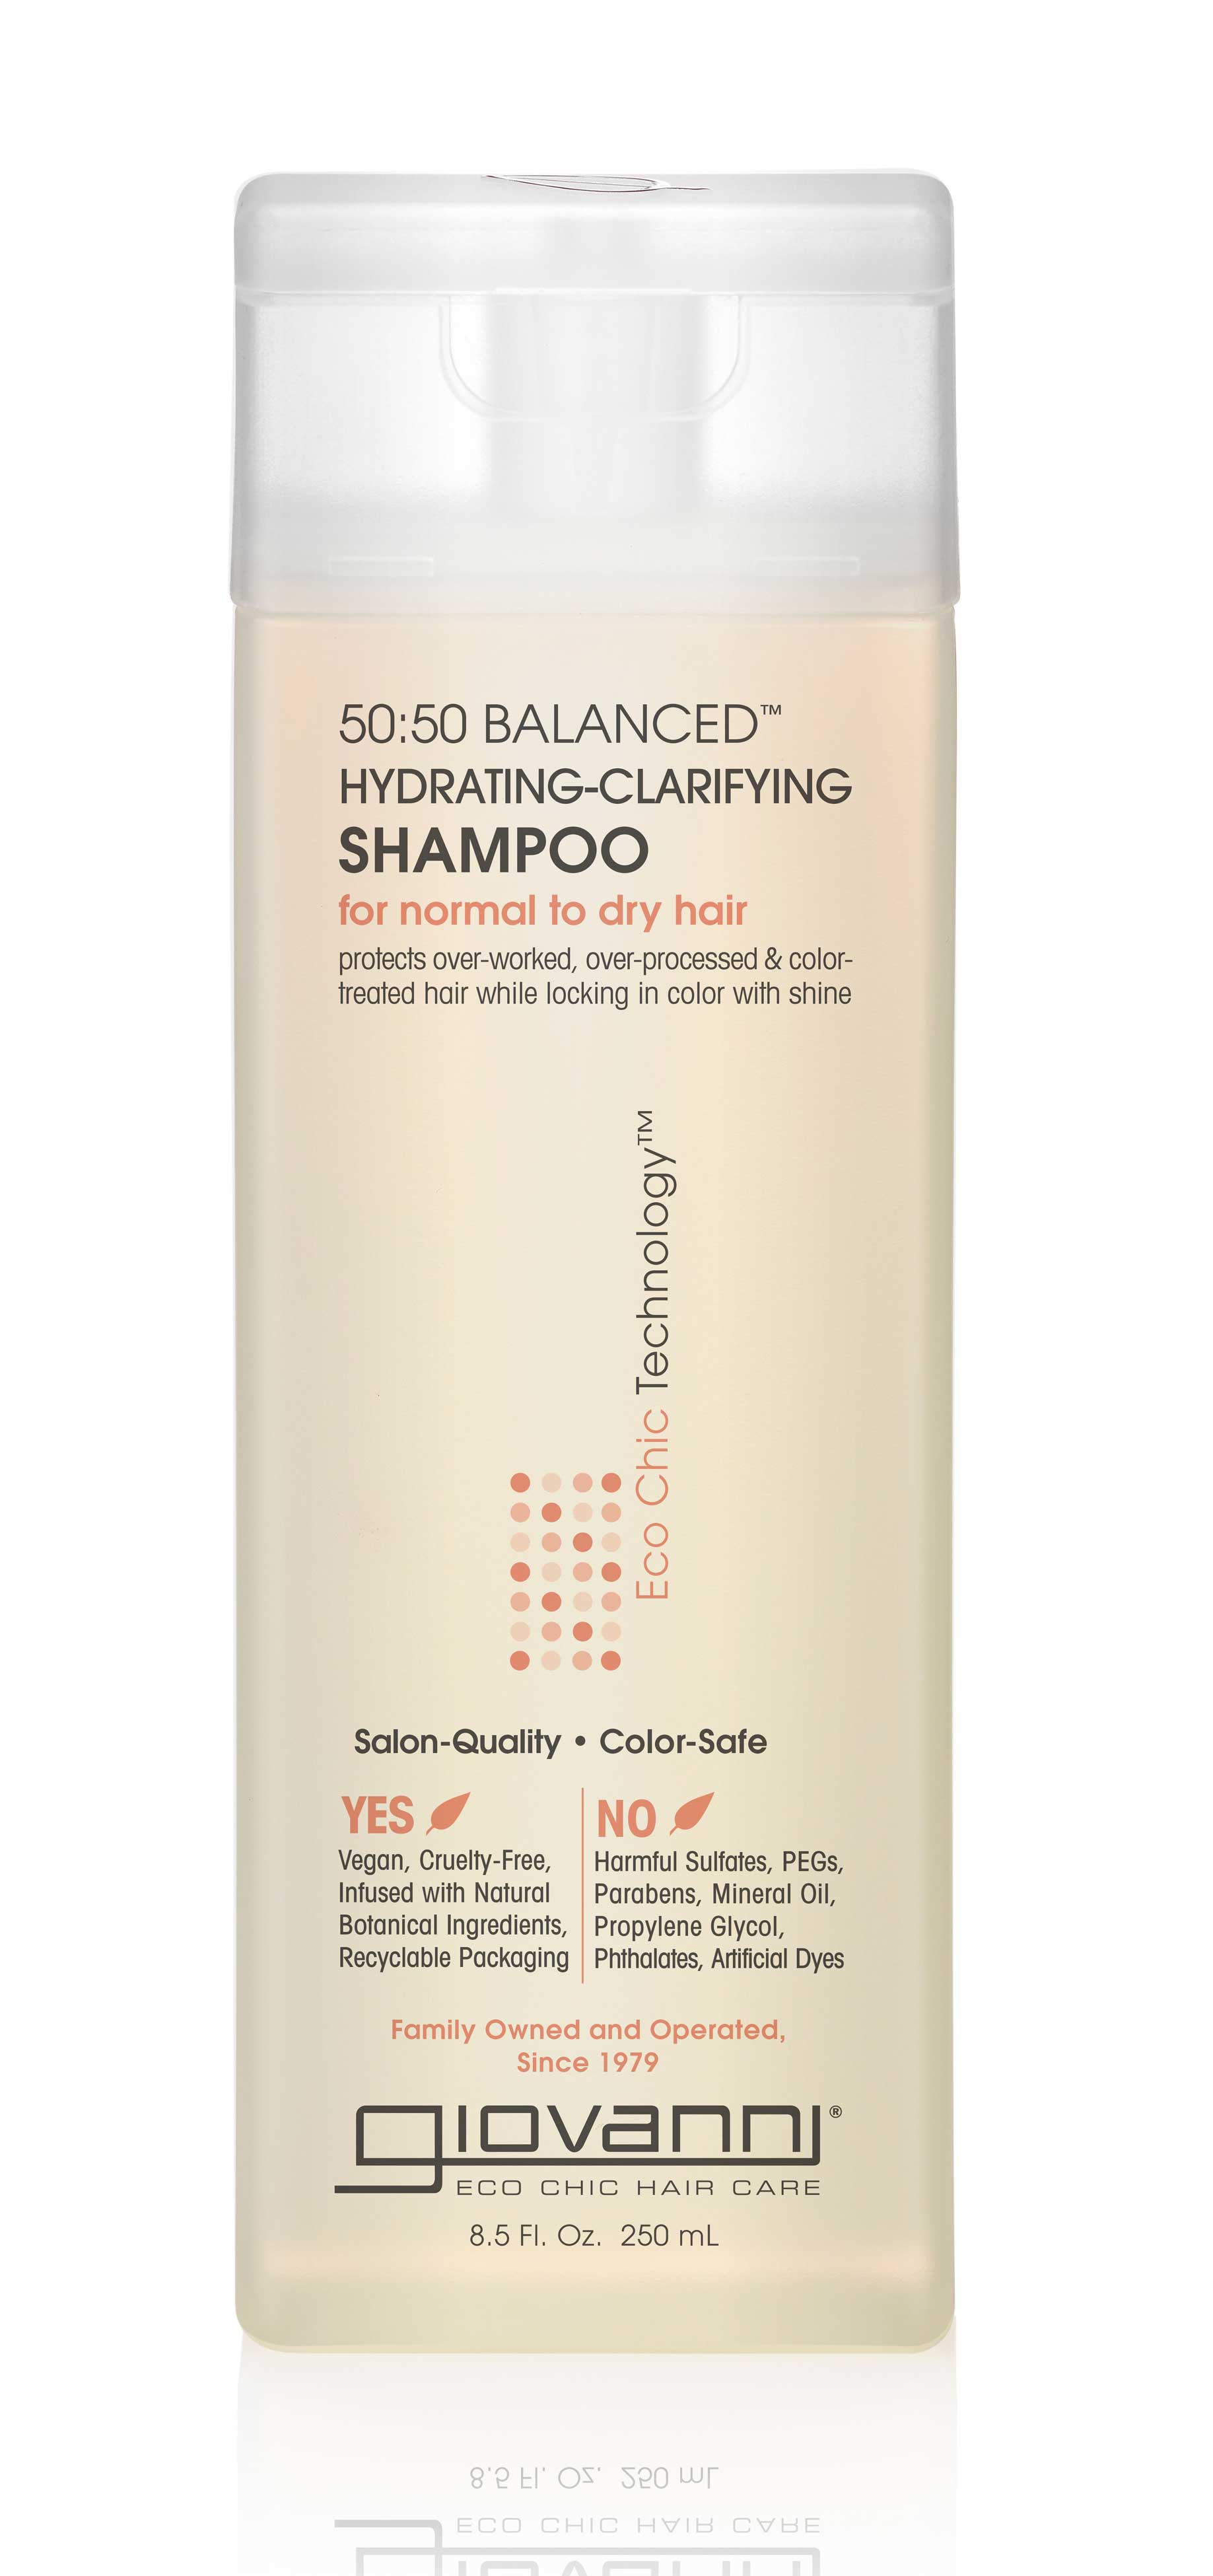 Giovanni 50:50 Balancing Clarifying Shampoo 250ml